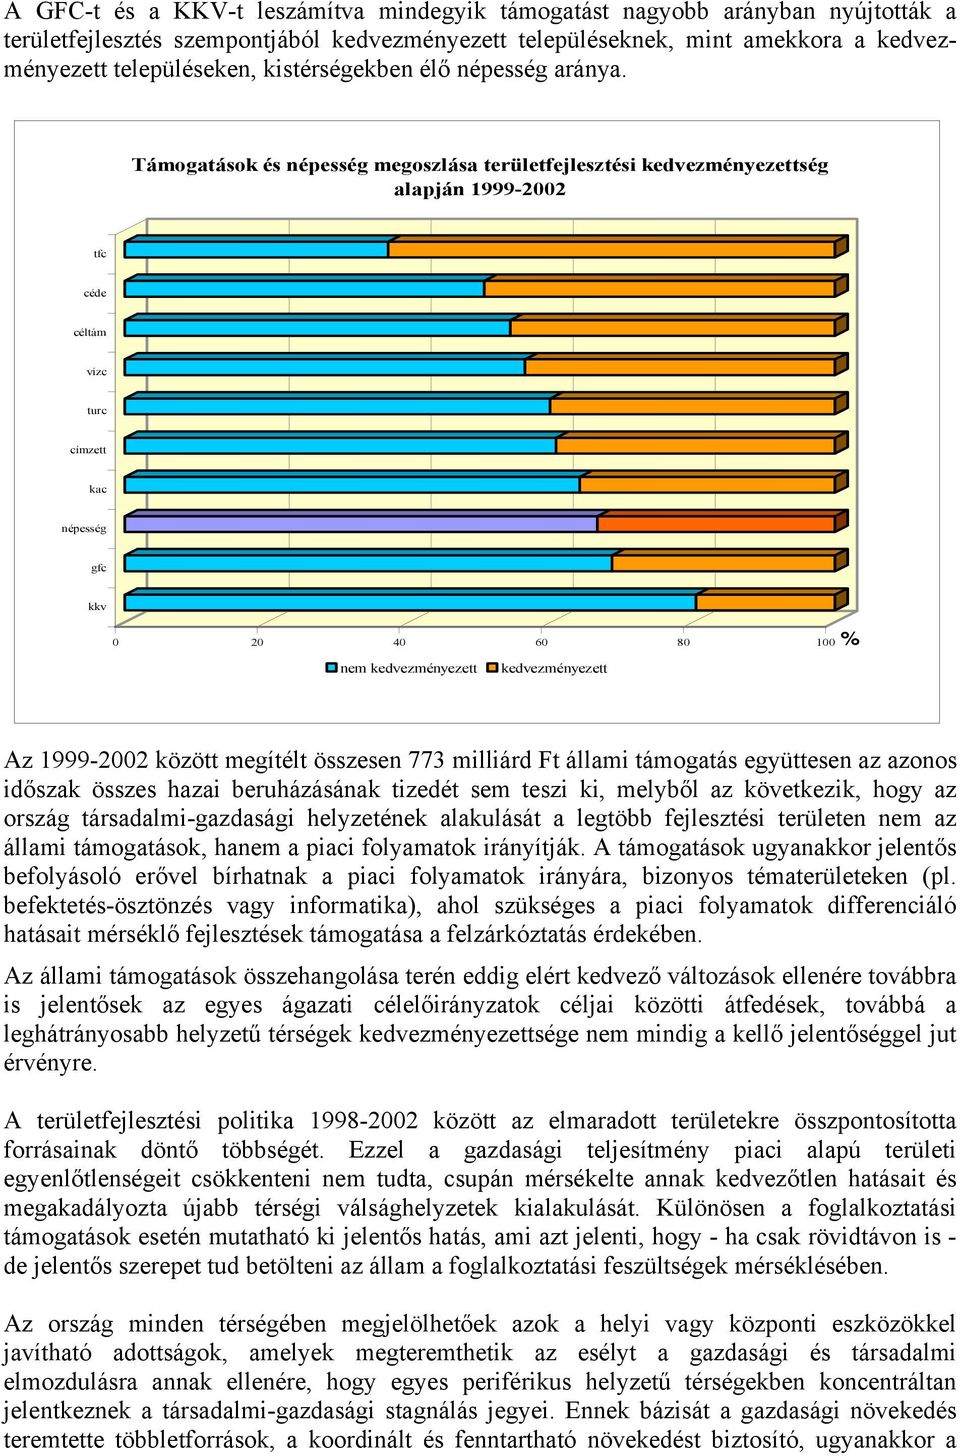 Támogatások és népesség megoszlása területfejlesztési kedvezményezettség alapján 1999-2002 tfc céde céltám vízc turc címzett kac népesség gfc kkv 0 20 40 60 80 100% nem kedvezményezett